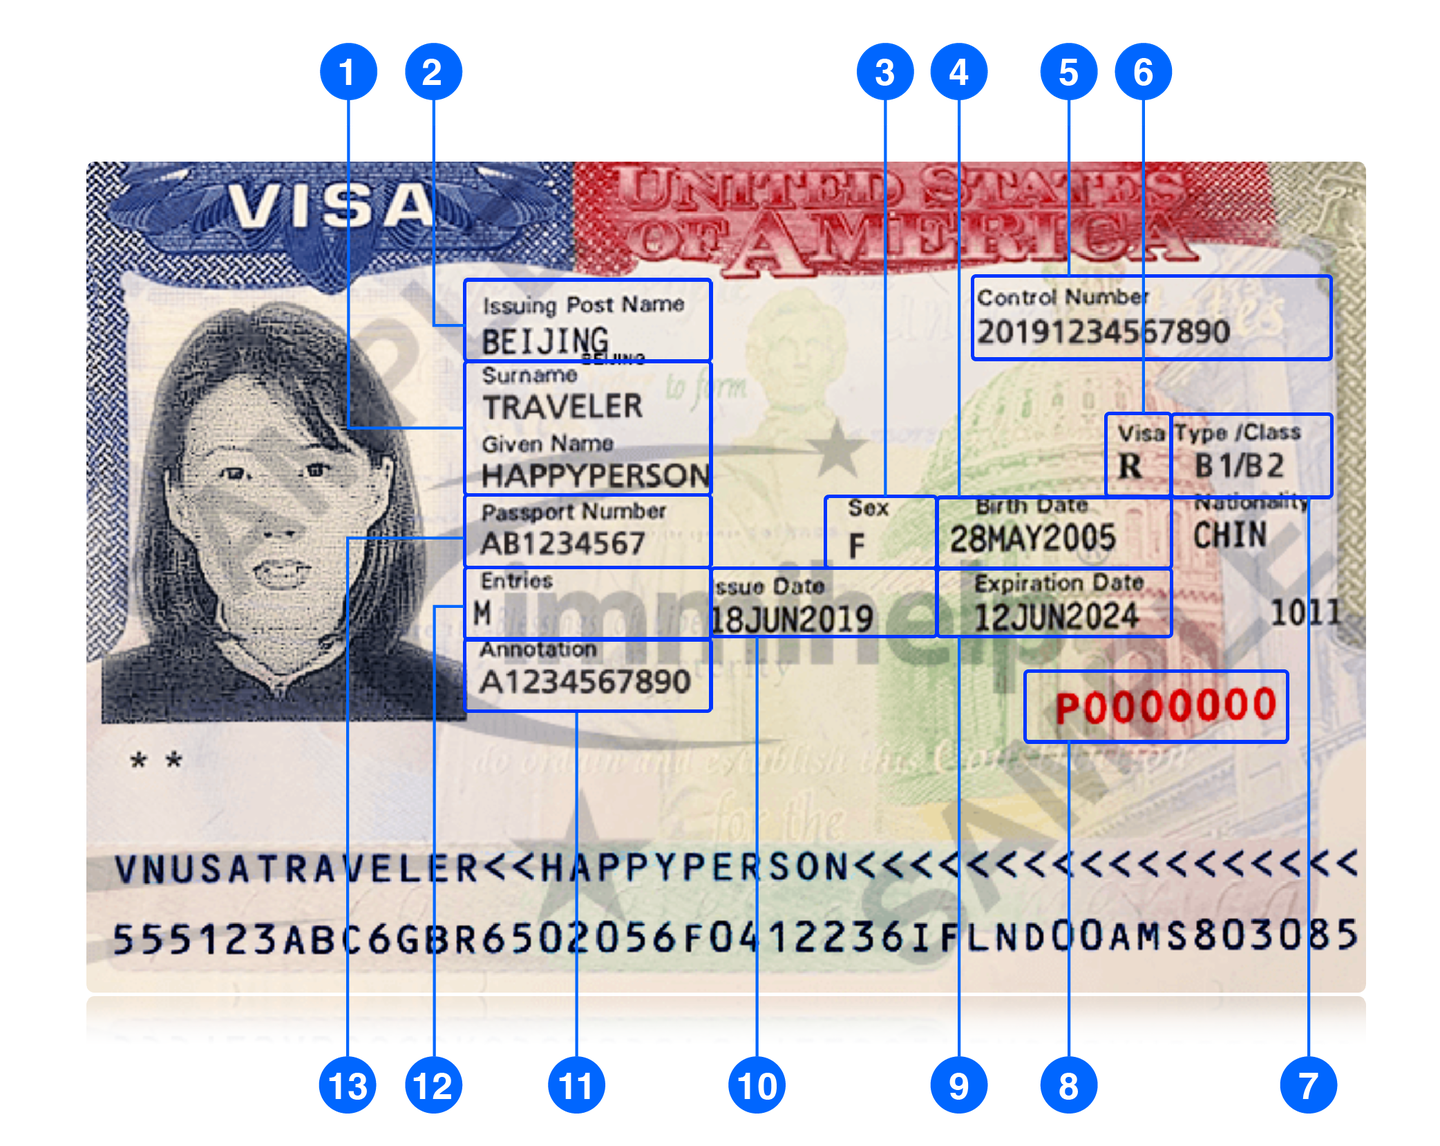 Ejemplo de una visa estadounidense y sus partes. Fotogrfía: Oficina de Asuntos Consulares del Departamento de Estado de EE. UU.